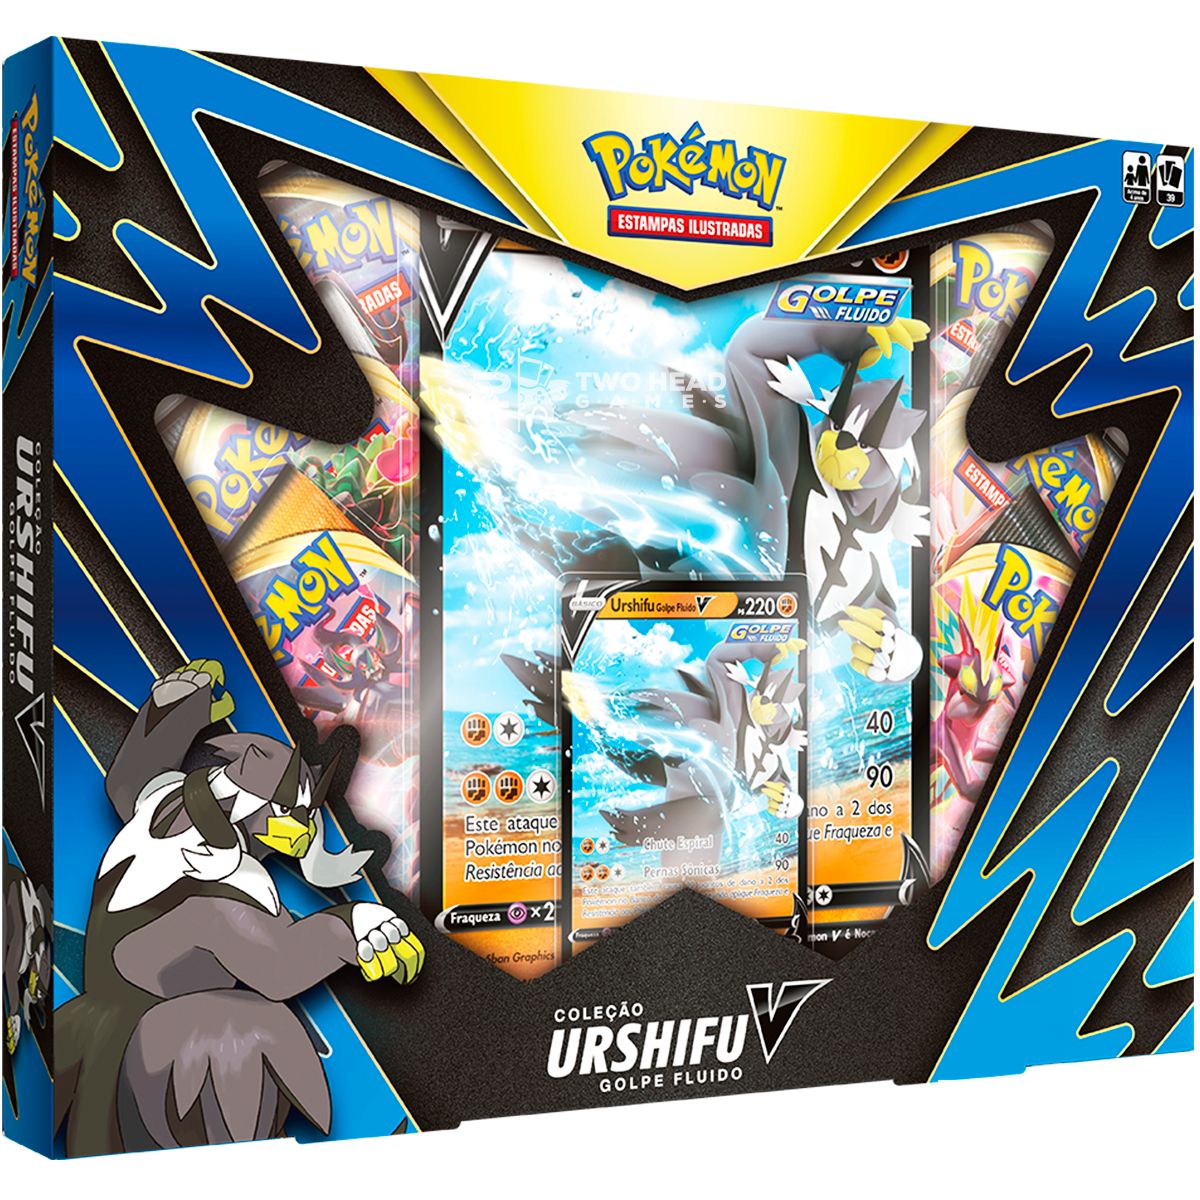 Box Pokémon Urshifu V Golpe Fluido Espada Escudo